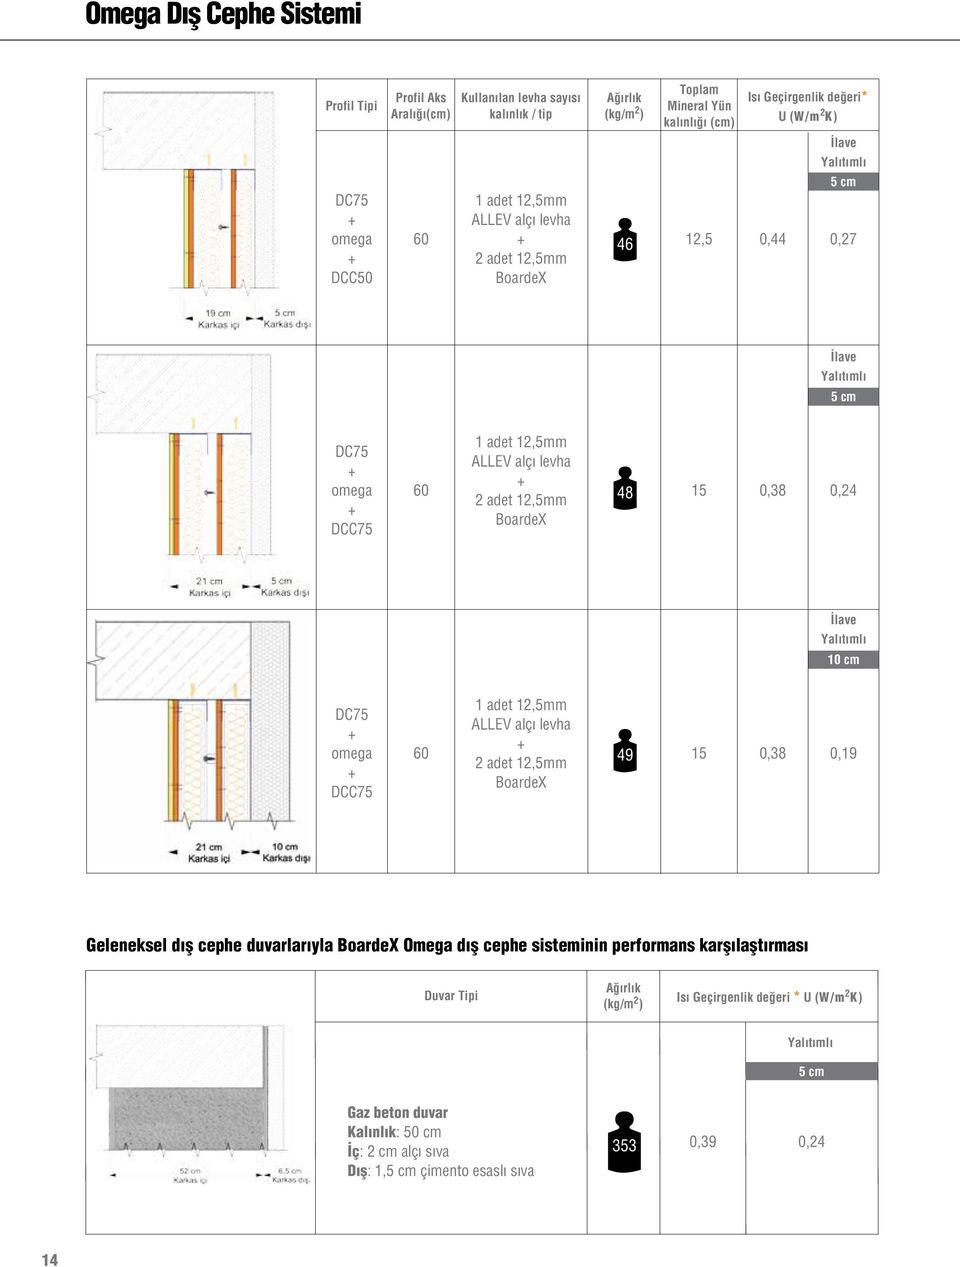 omega DCC75 60 49 15 0,38 0,19 Geleneksel dış cephe duvarlarıyla Omega dış cephe sisteminin performans karşılaştırması Duvar Tipi Ağırlık